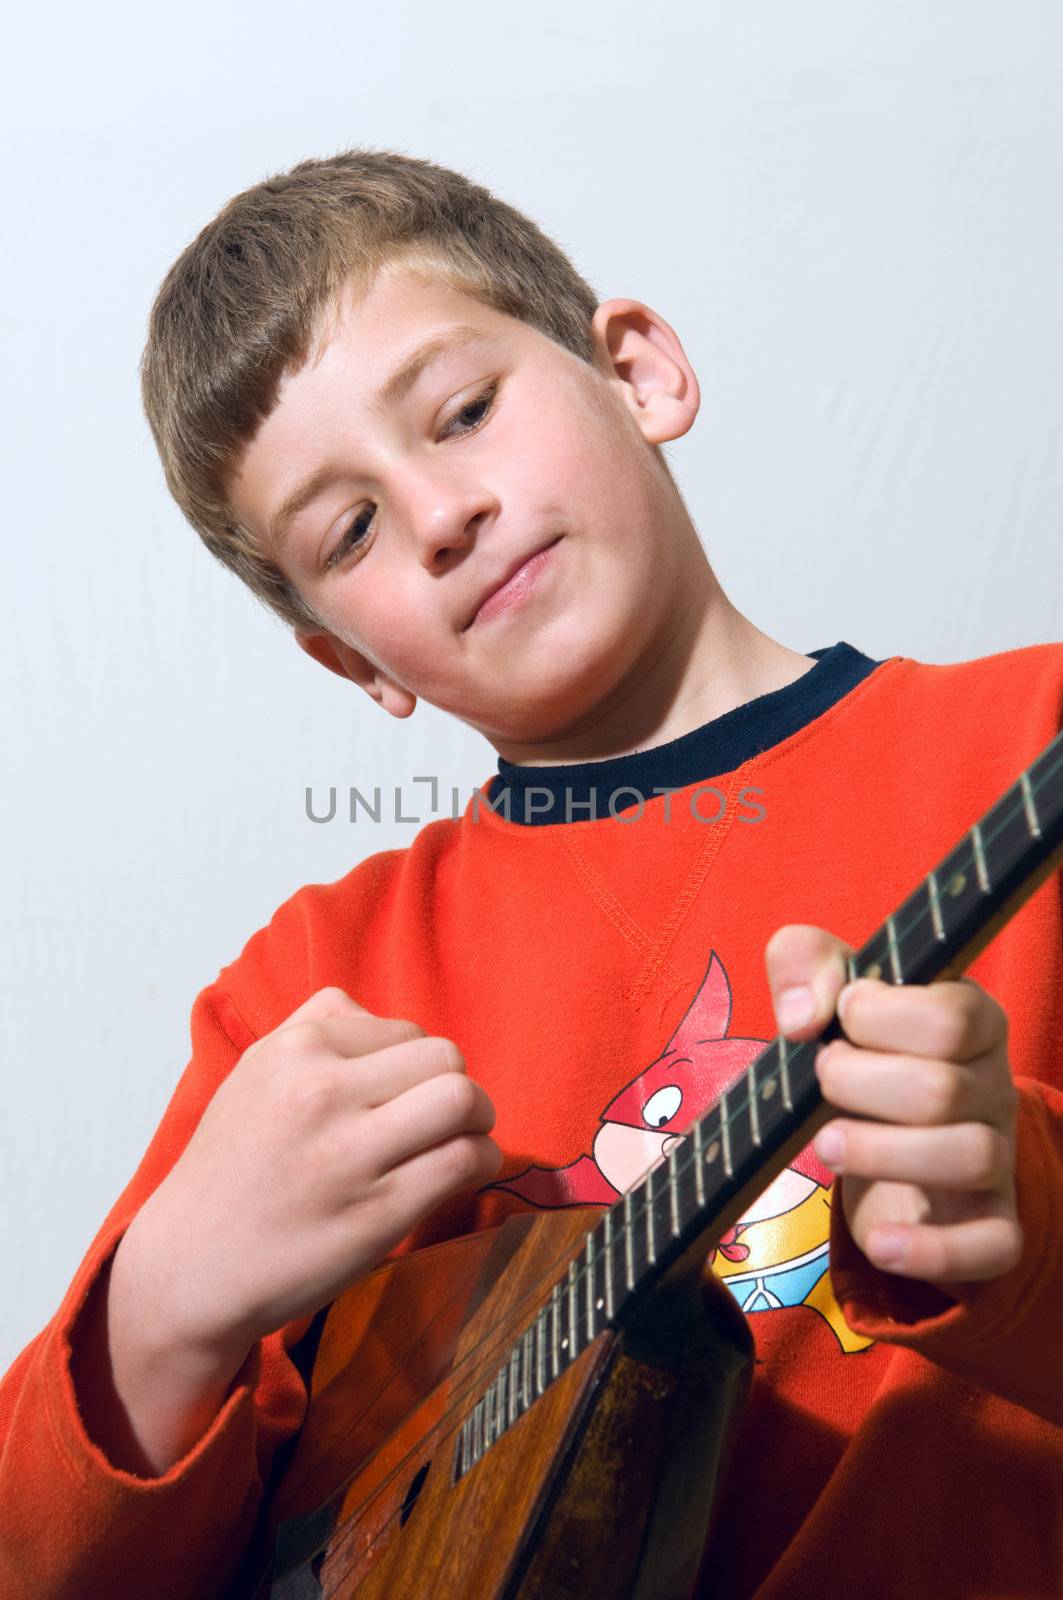 Little musician by ben44